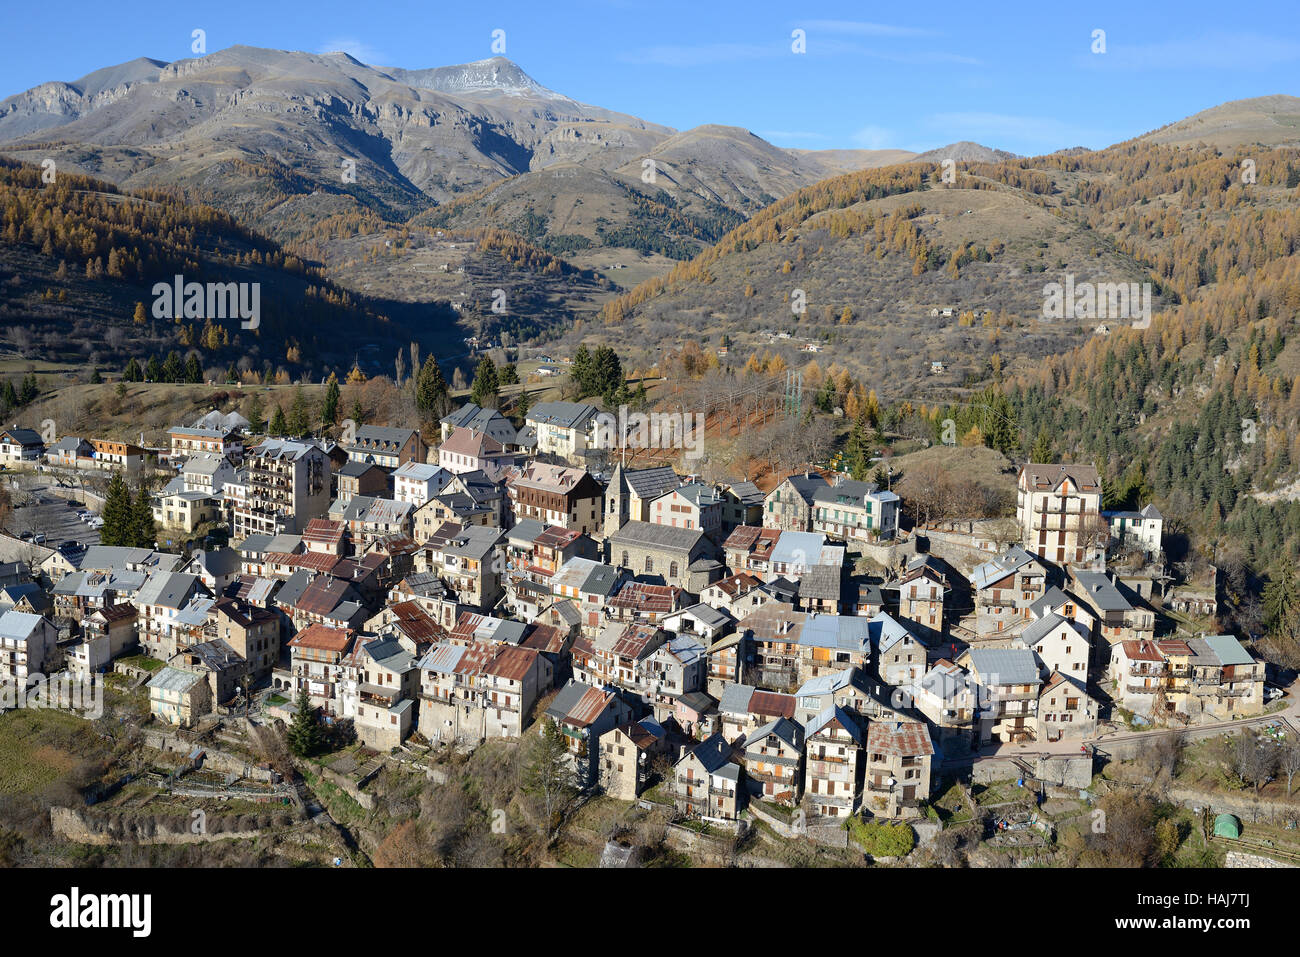 VISTA AEREA. Borgo medievale in cima a una collina sul pendio del Monte Mounier; una vetta alta 2817m nel Parco Nazionale del Mercantour. Beuil, Alpes-Maritimes, Francia. Foto Stock